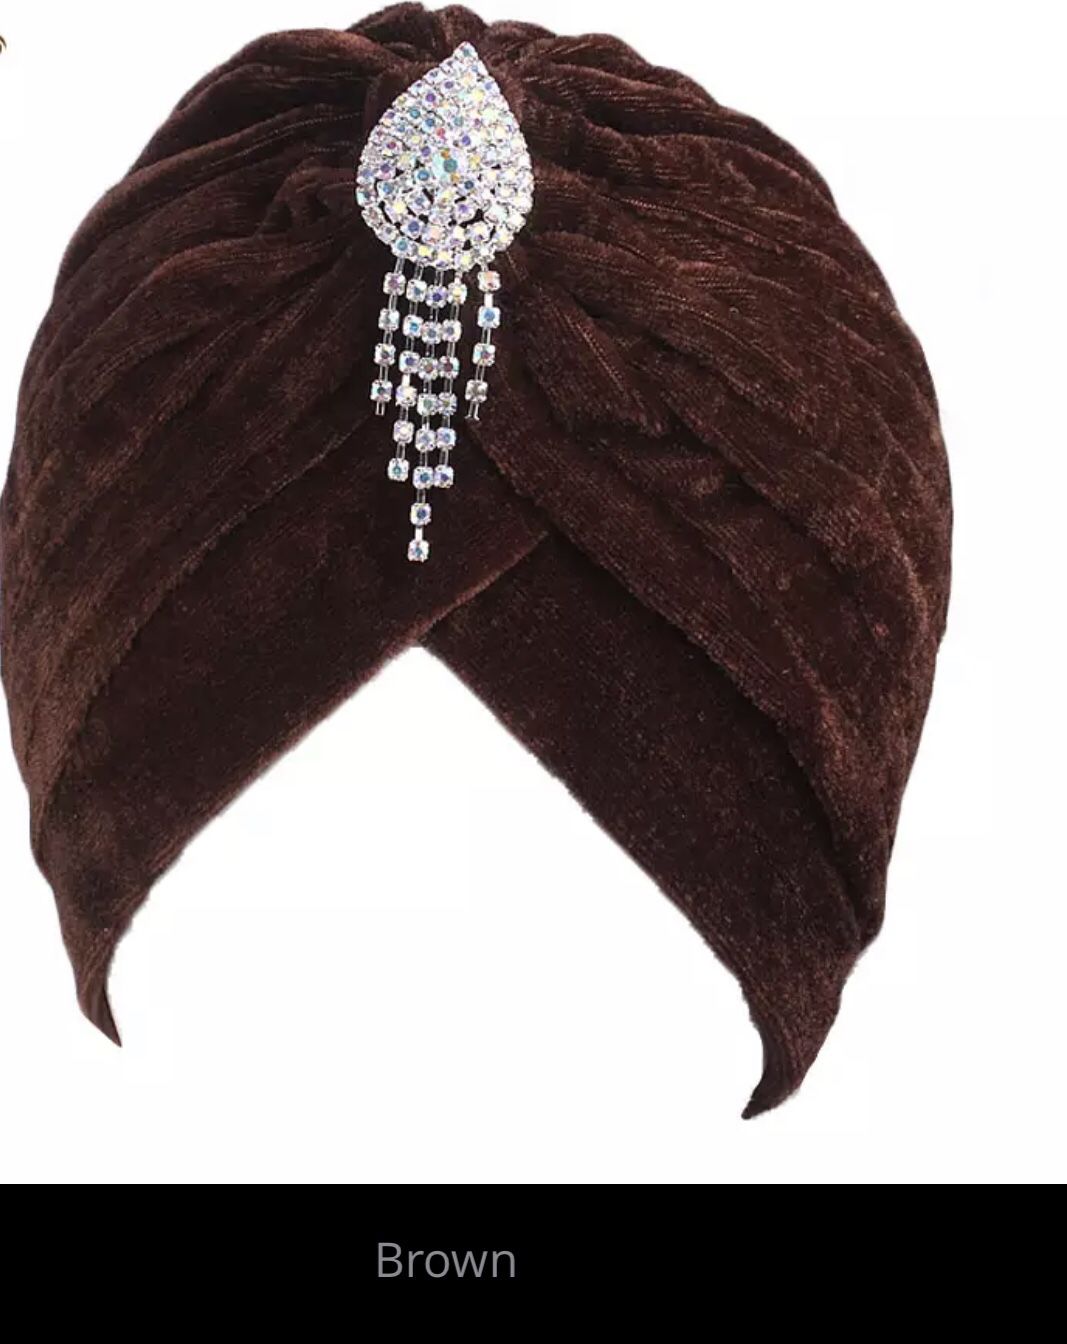 Velvet brooch bonnet